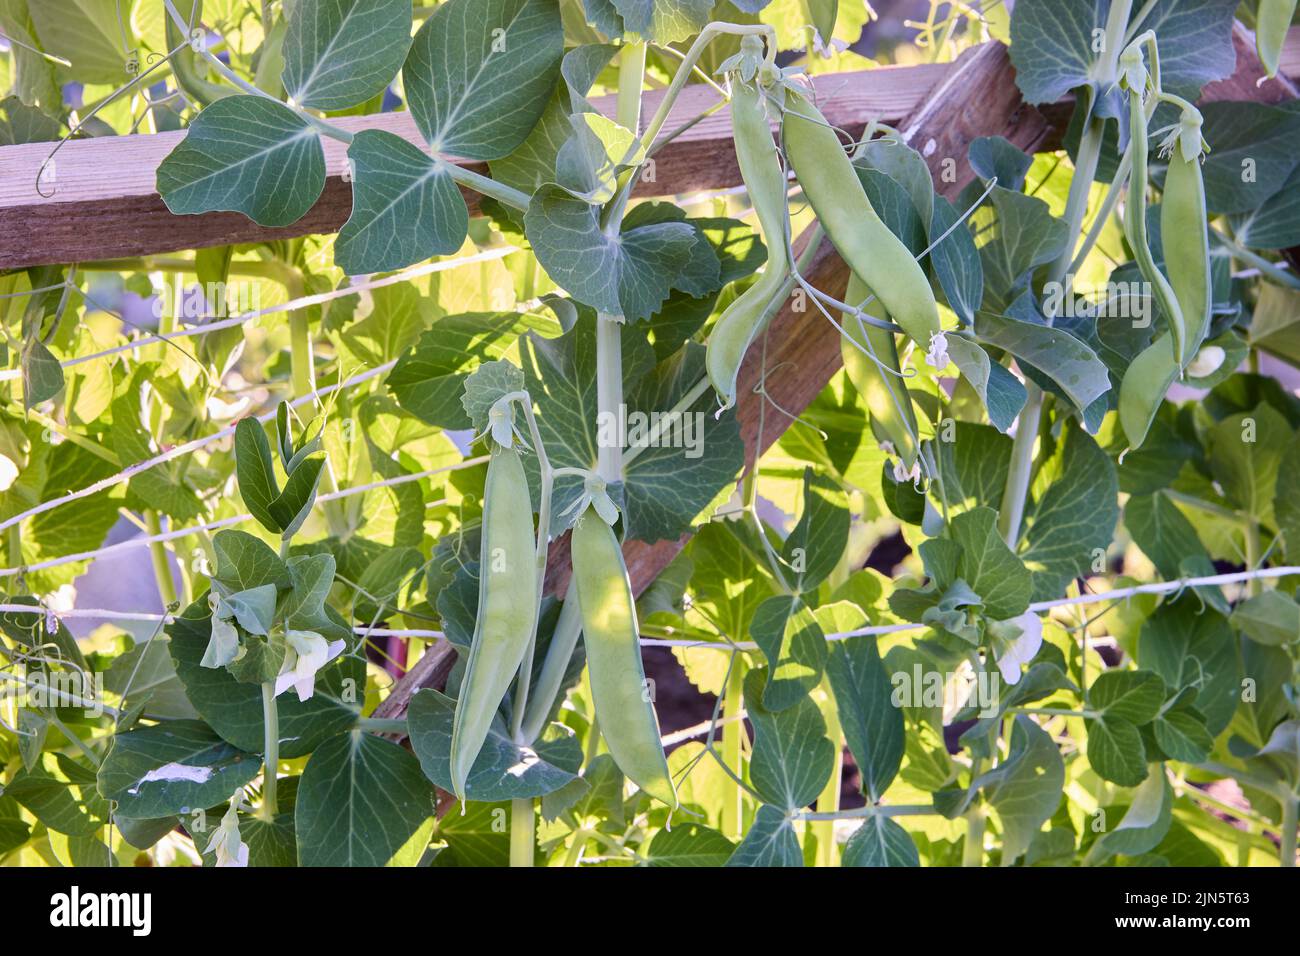 Los guisantes verdes crecen en el jardín del jardinero al aire libre. Foto de stock